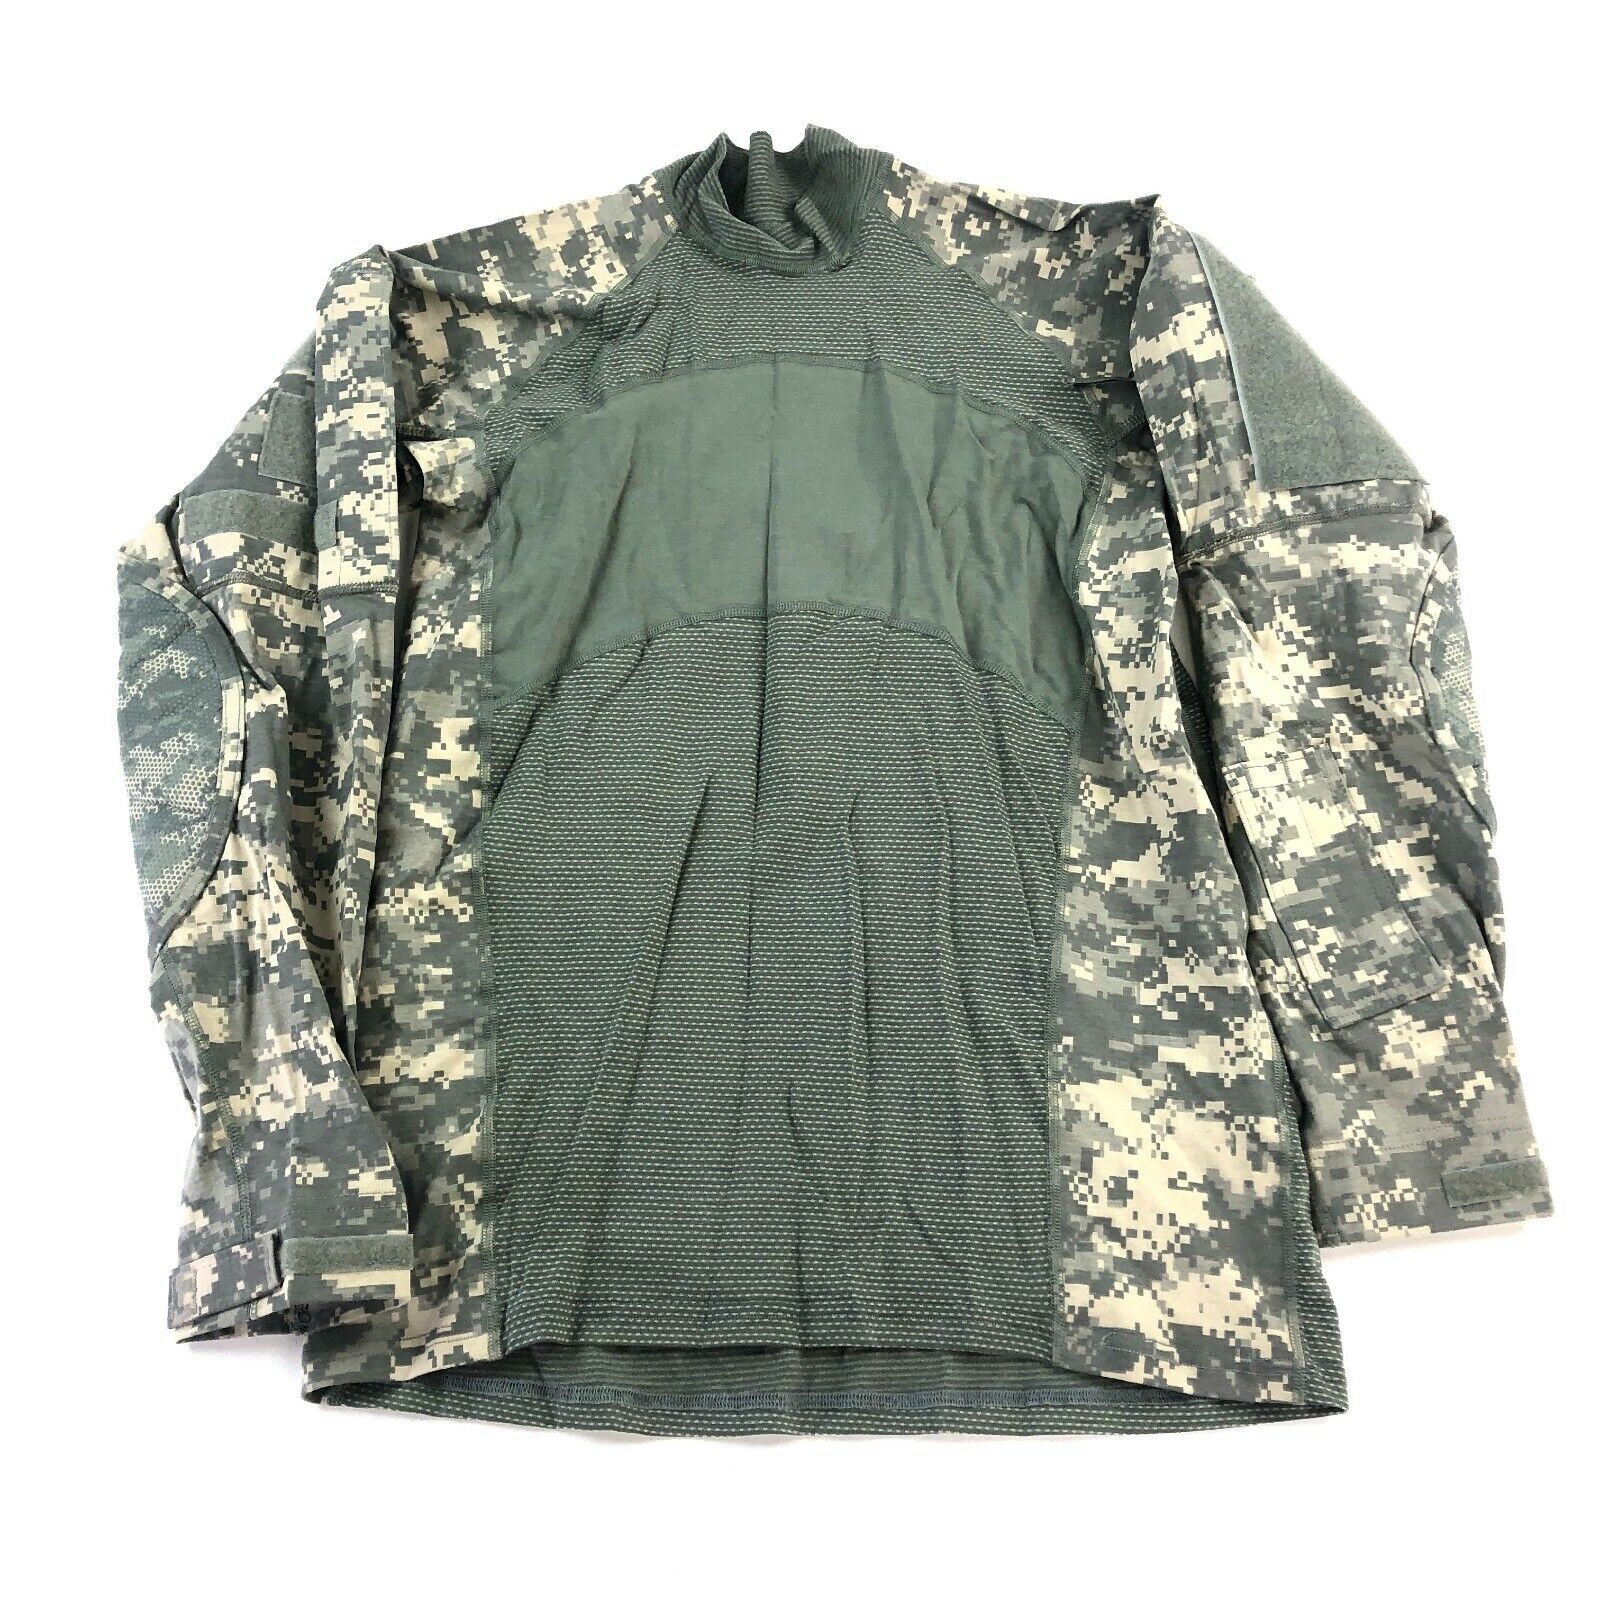 MASSIF ACU Army Combat Shirt ACS Flame Resistant Top Camo USGI Military Large